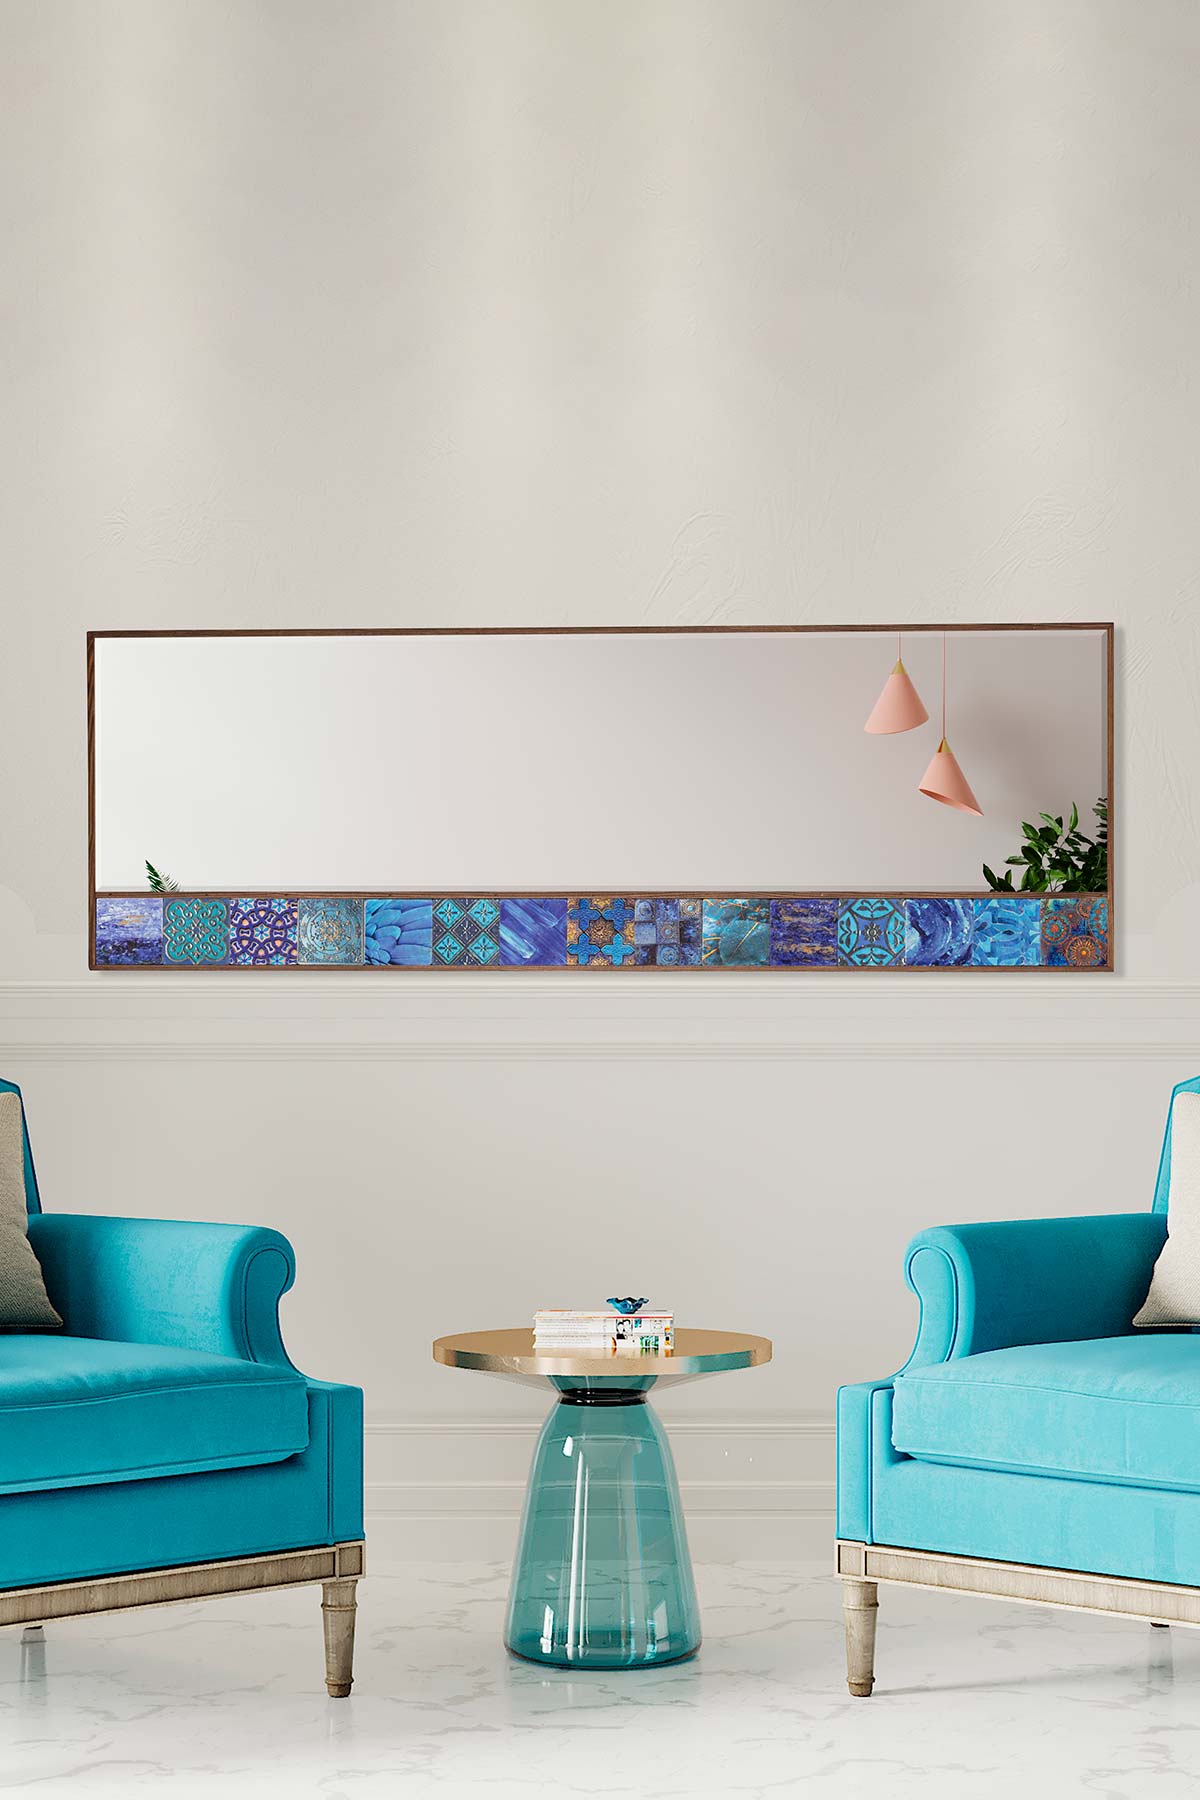 Amalfi Mirror 50x152 - Sculpo